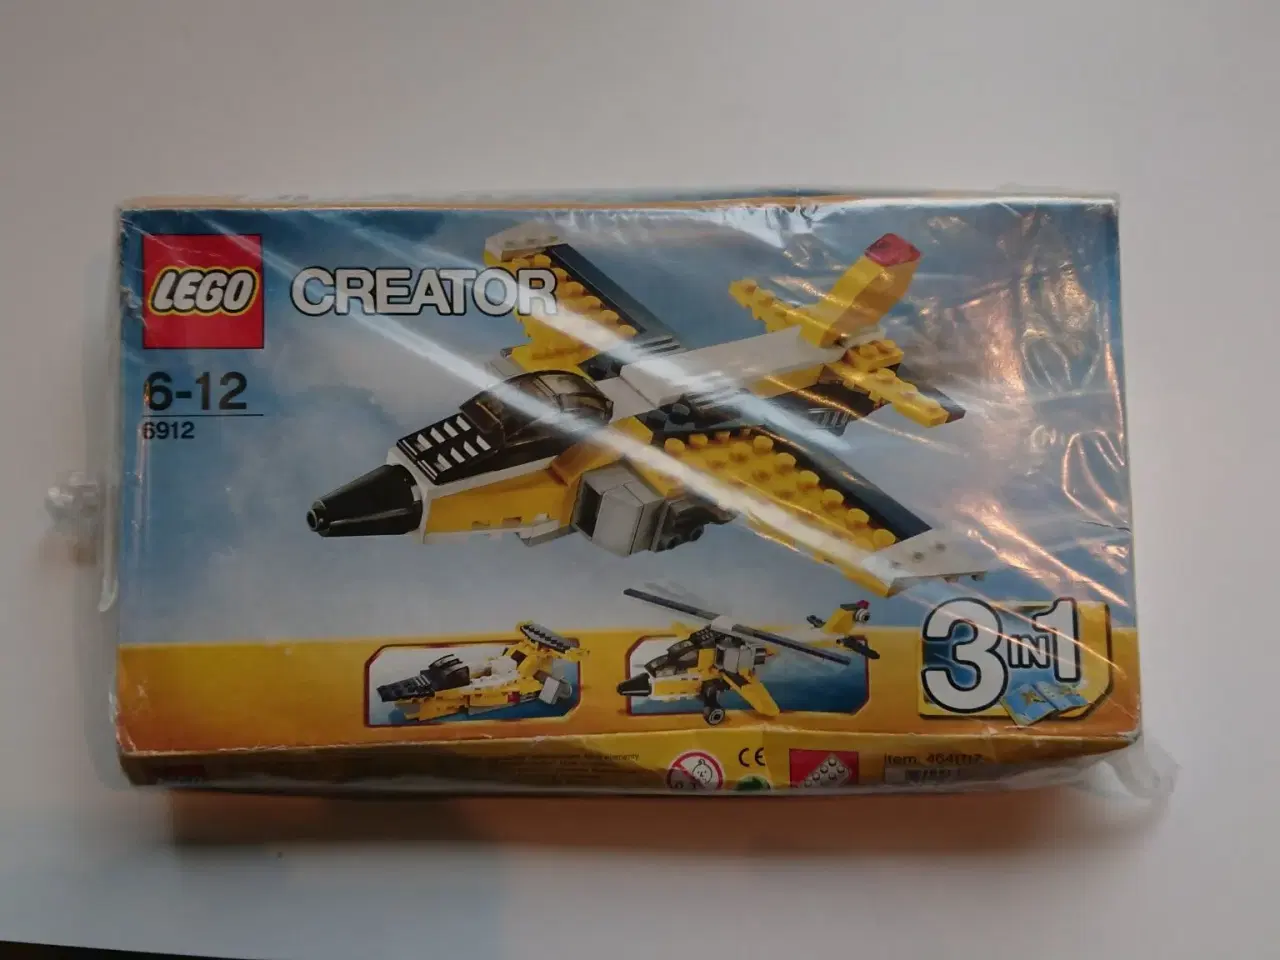 Billede 1 - Lego creator sæt, model 6912